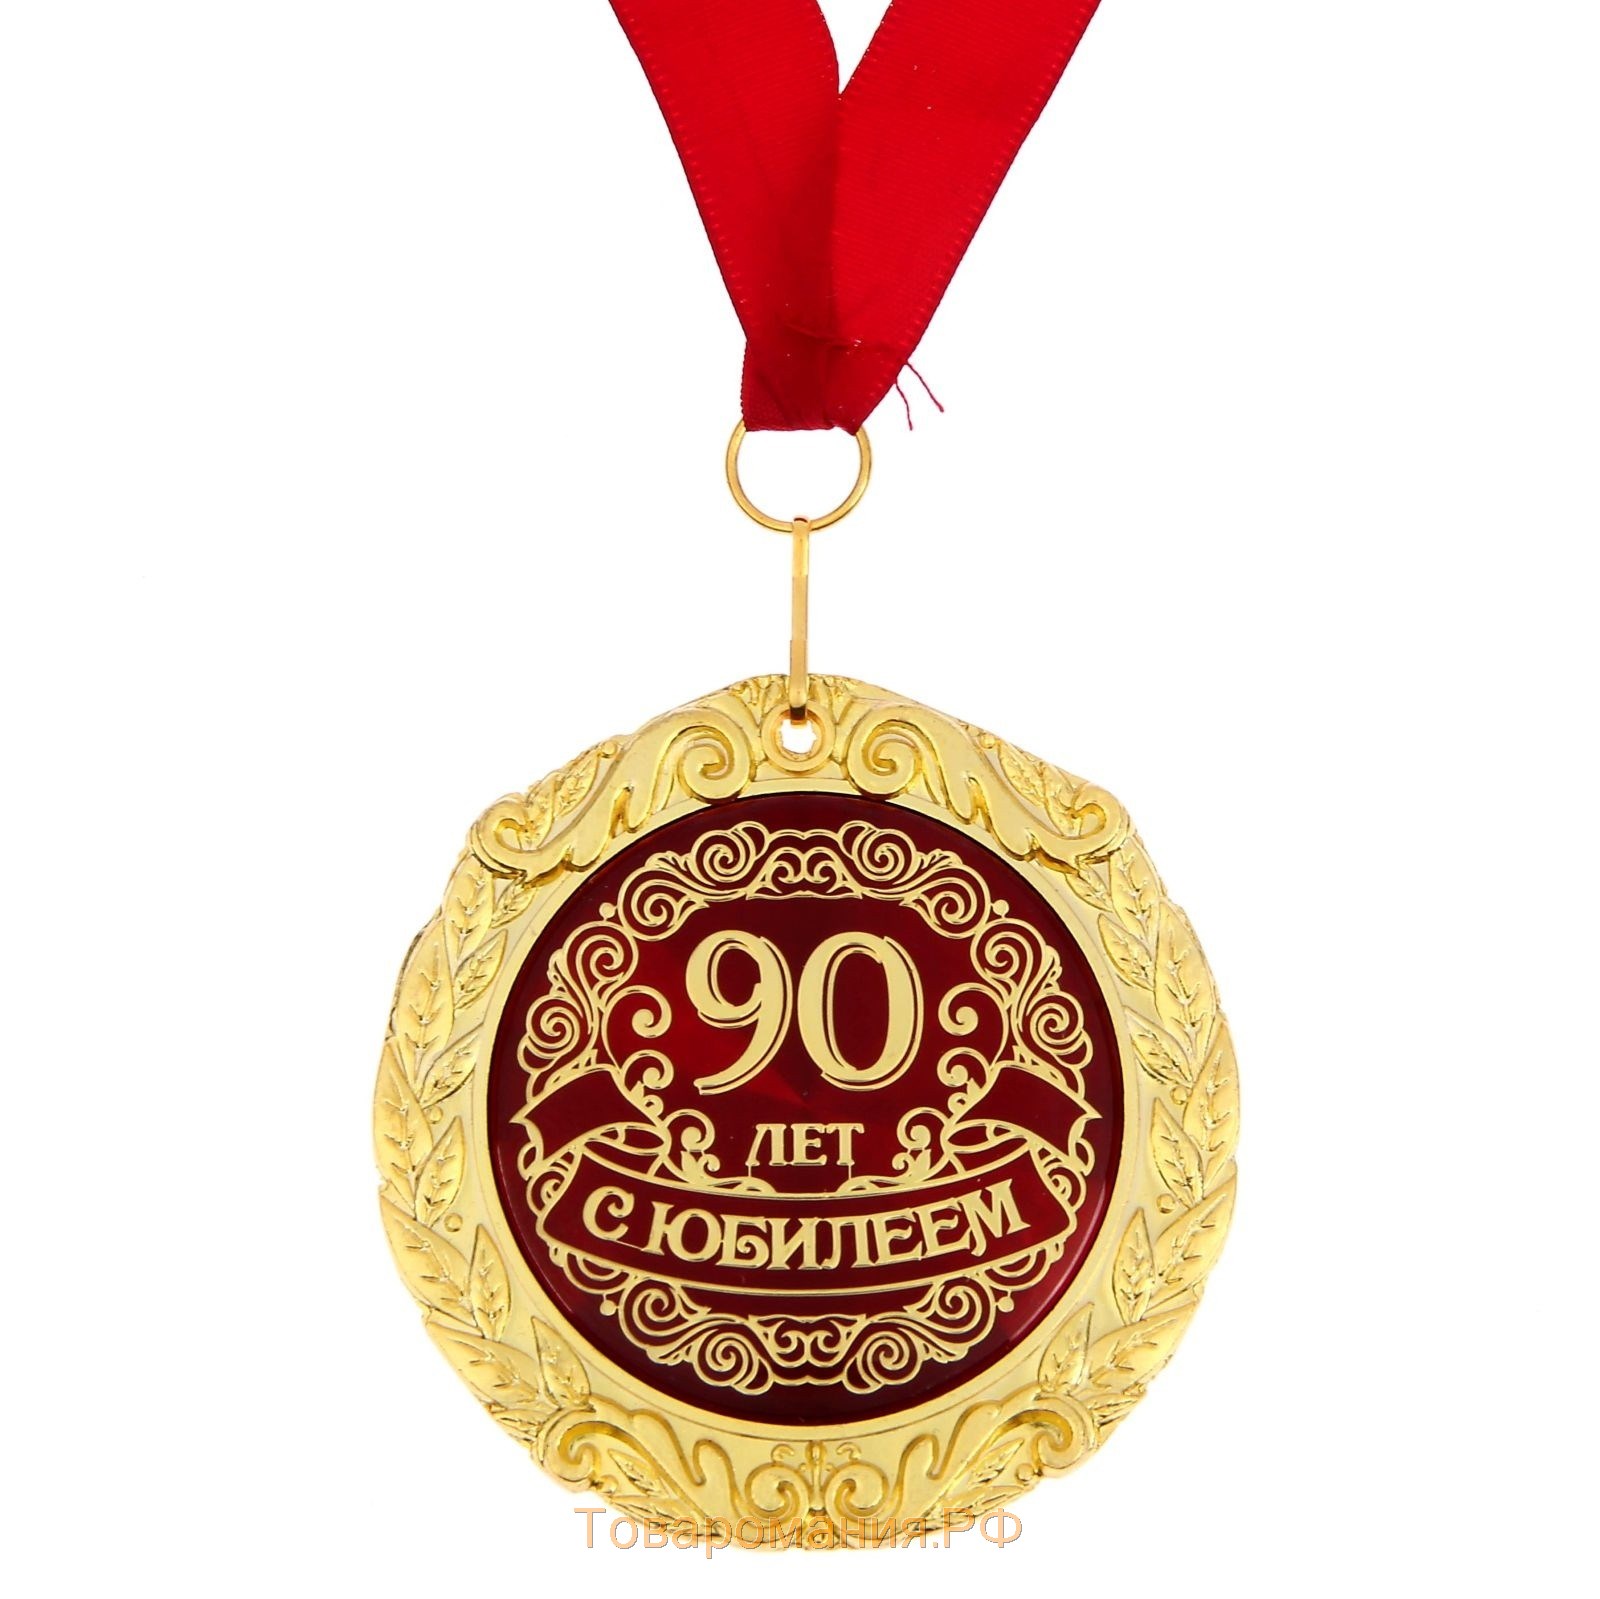 Поздравить 90 лет. Медаль с юбилеем. С юбилеем 90 лет. Медаль 90 лет. Медаль с юбилеем 90.